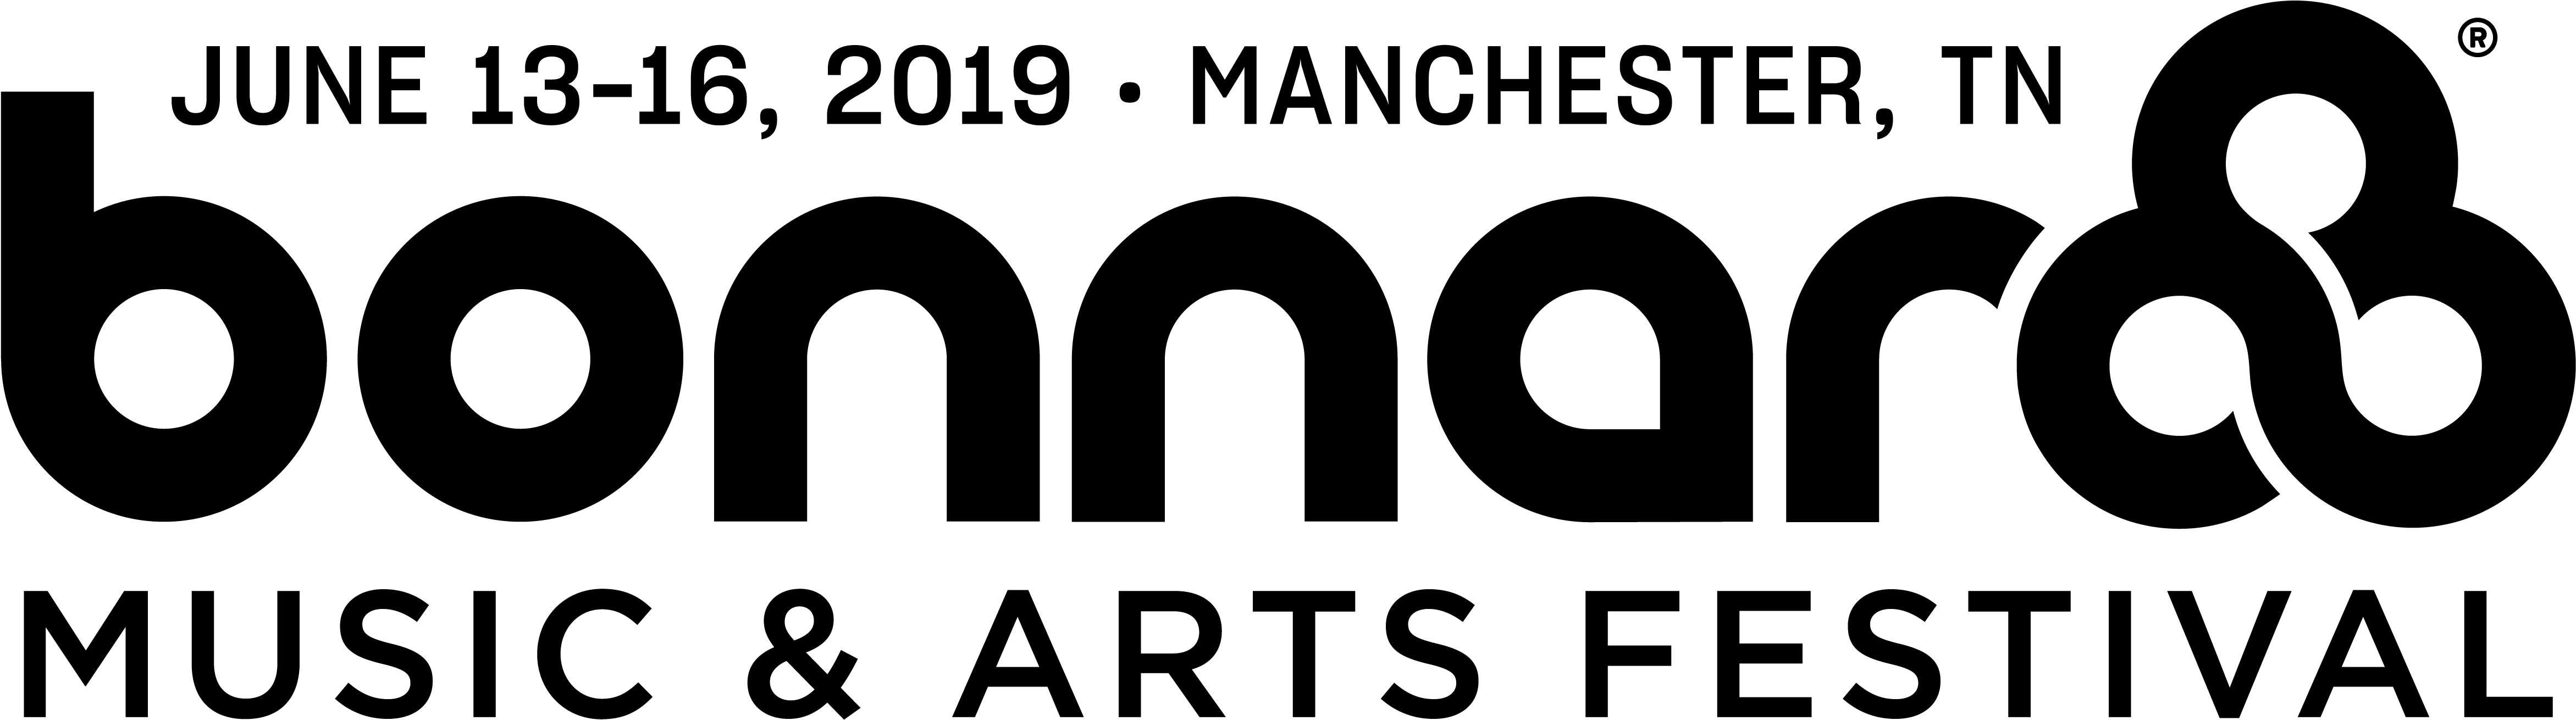 Download Event Logo - Bonnaroo 2019 Logo Clipart (5001x1510), Png Download